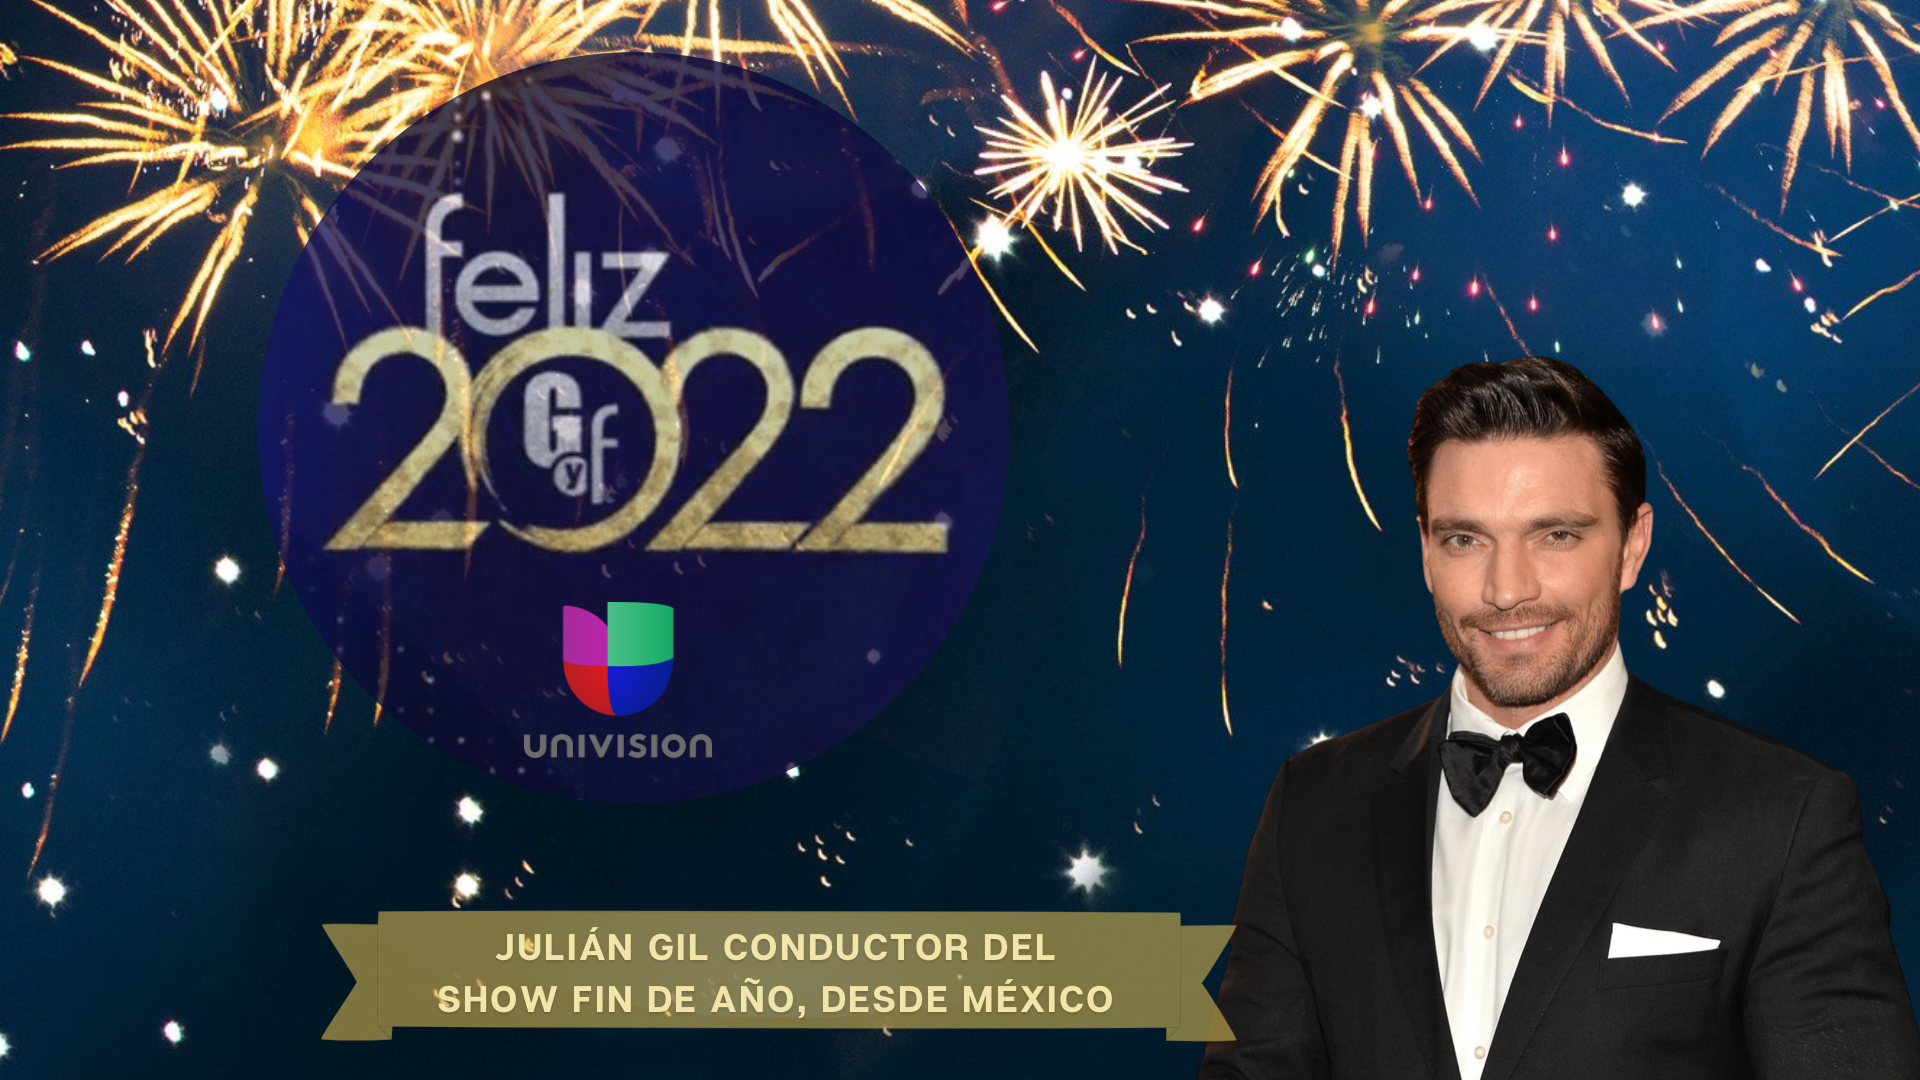 Julián Gil despide el año en México conduciendo el show “Feliz 2022” de Univision